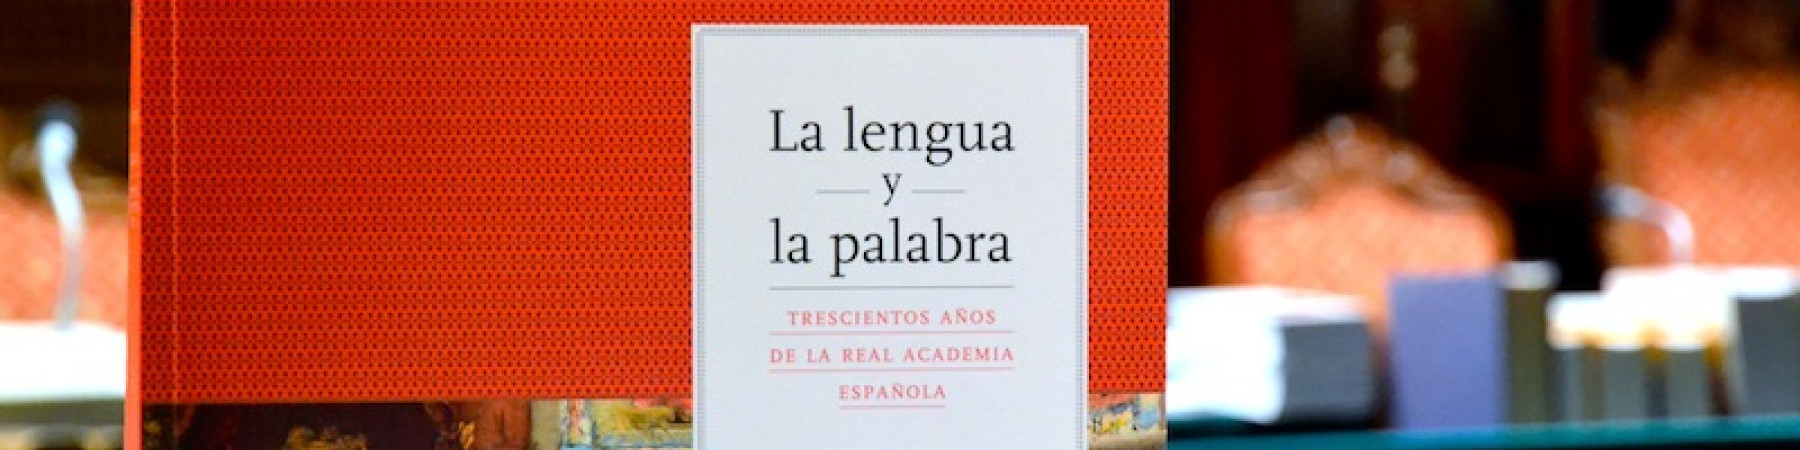 Catálogo de la exposición «La lengua y la palabra».